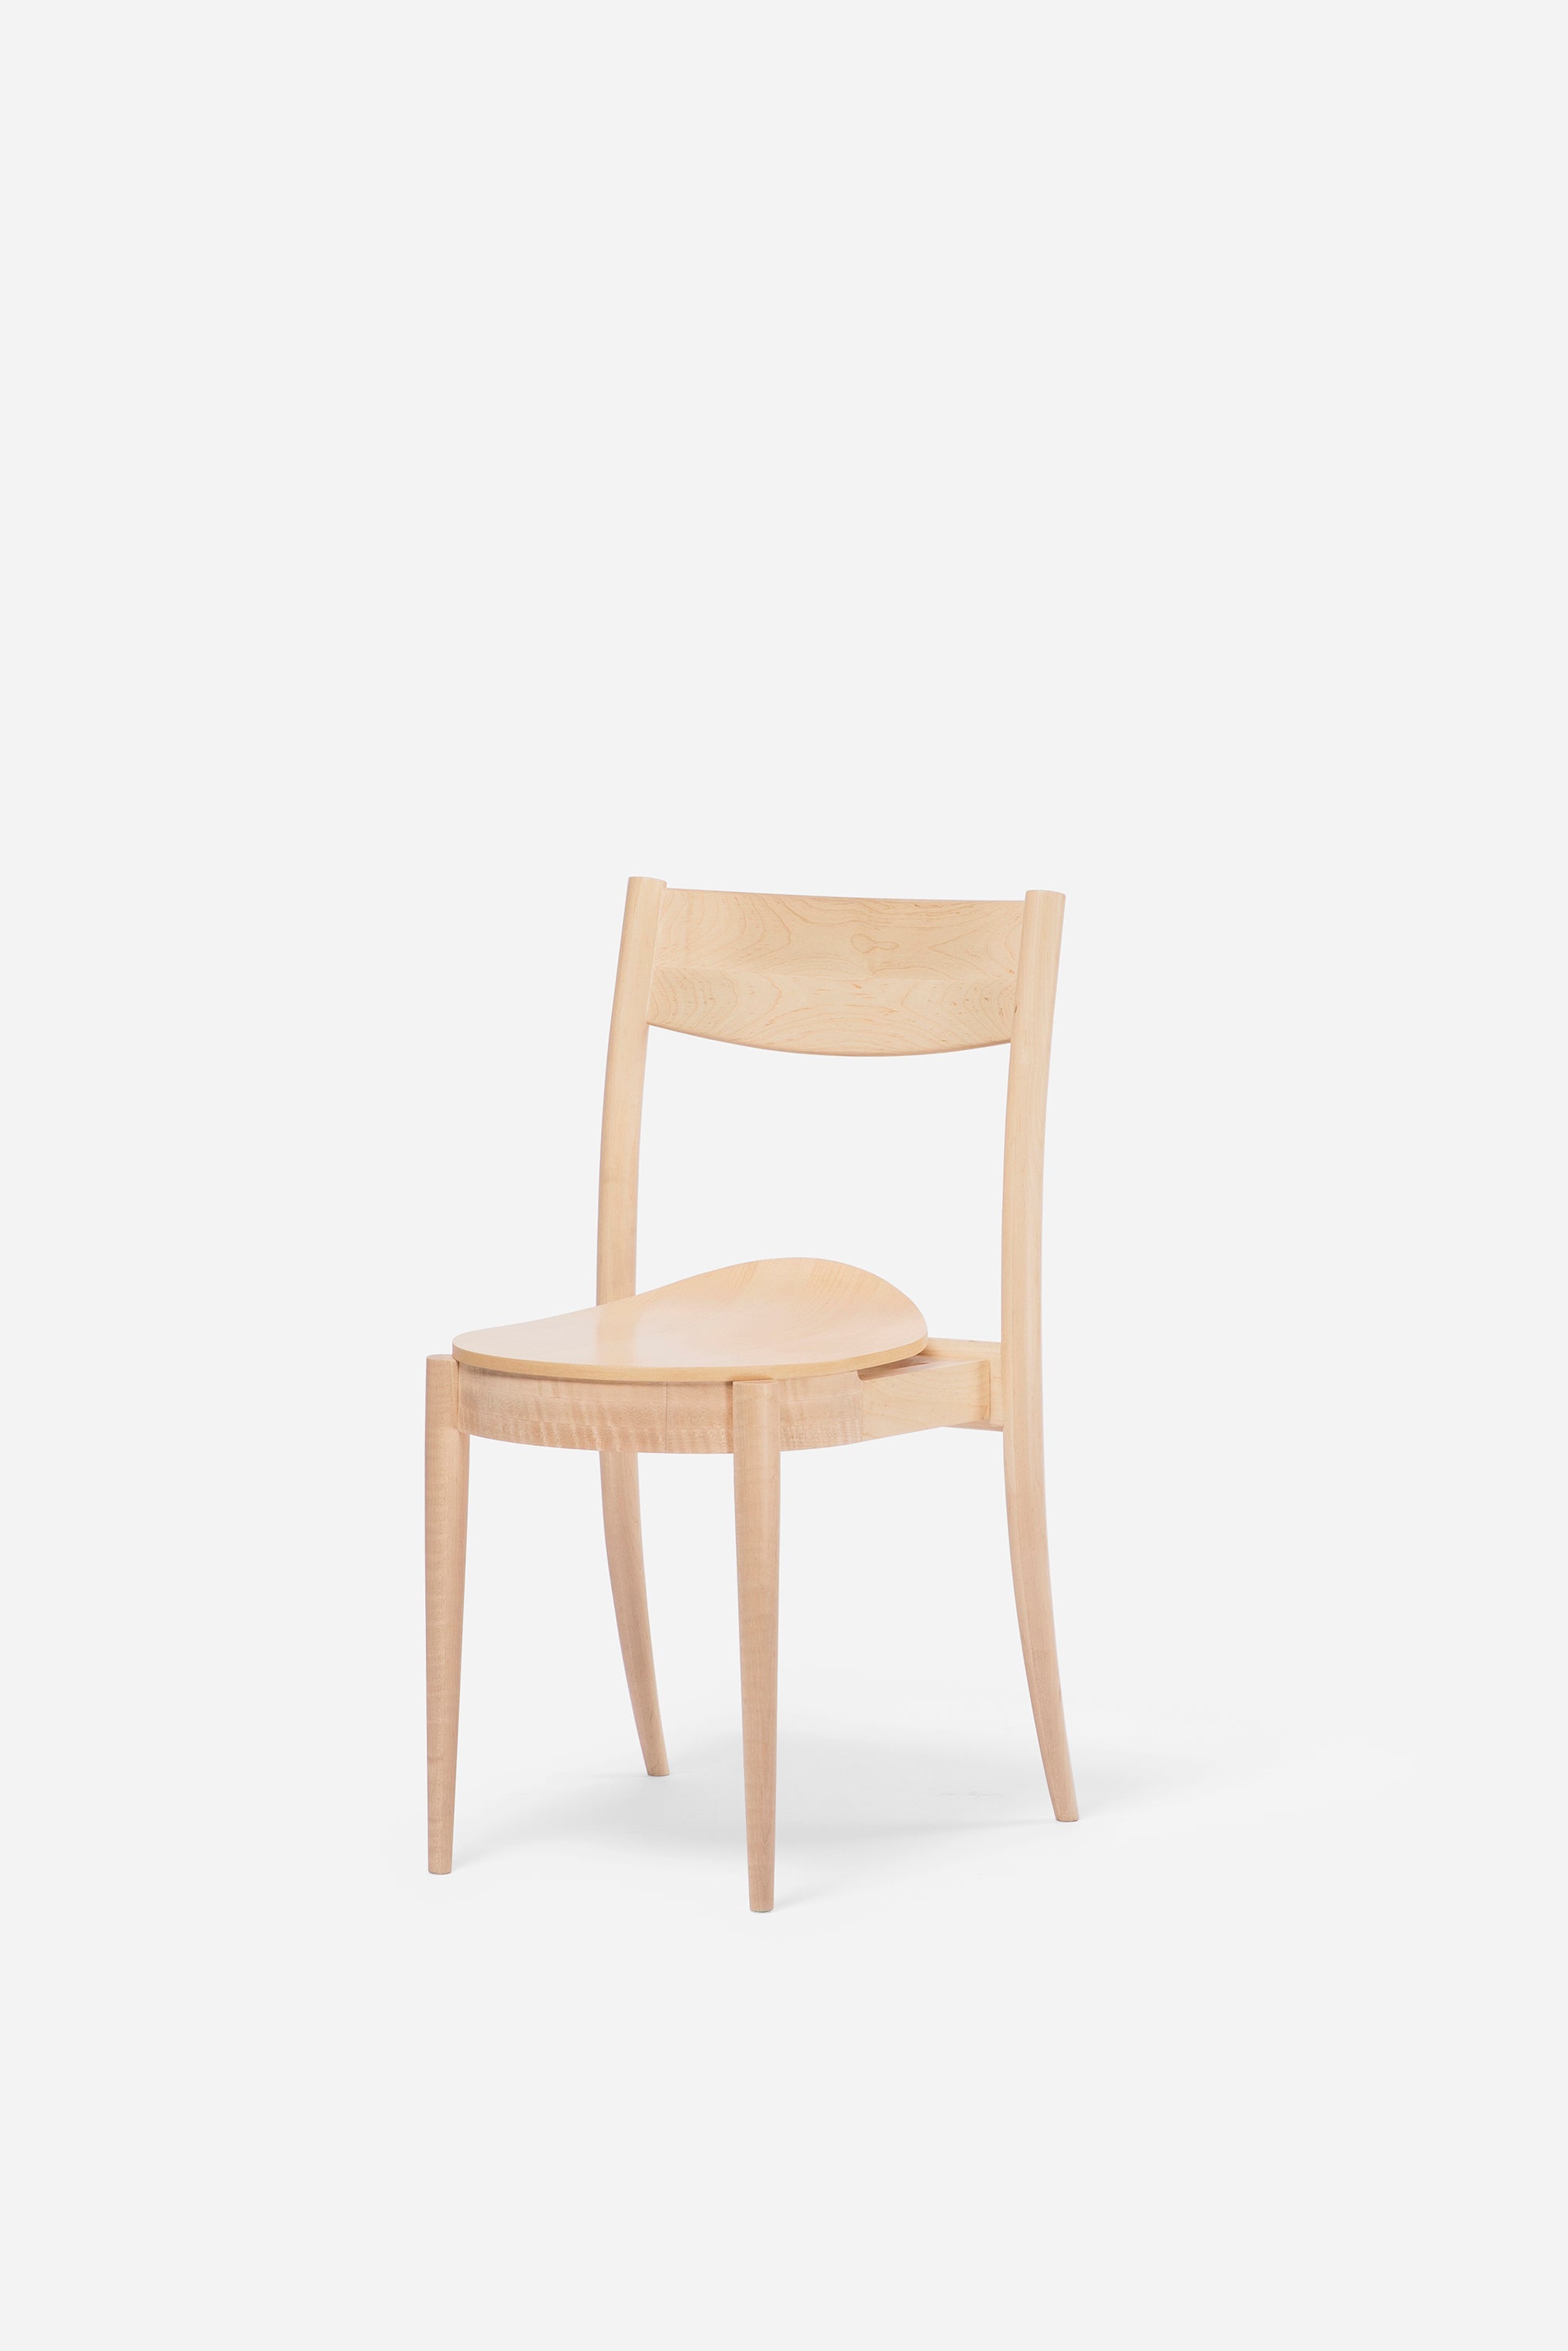 BOUNCE CHAIR Chair Ziinlife Modern Design Furniture Hong Kong Natural Oak